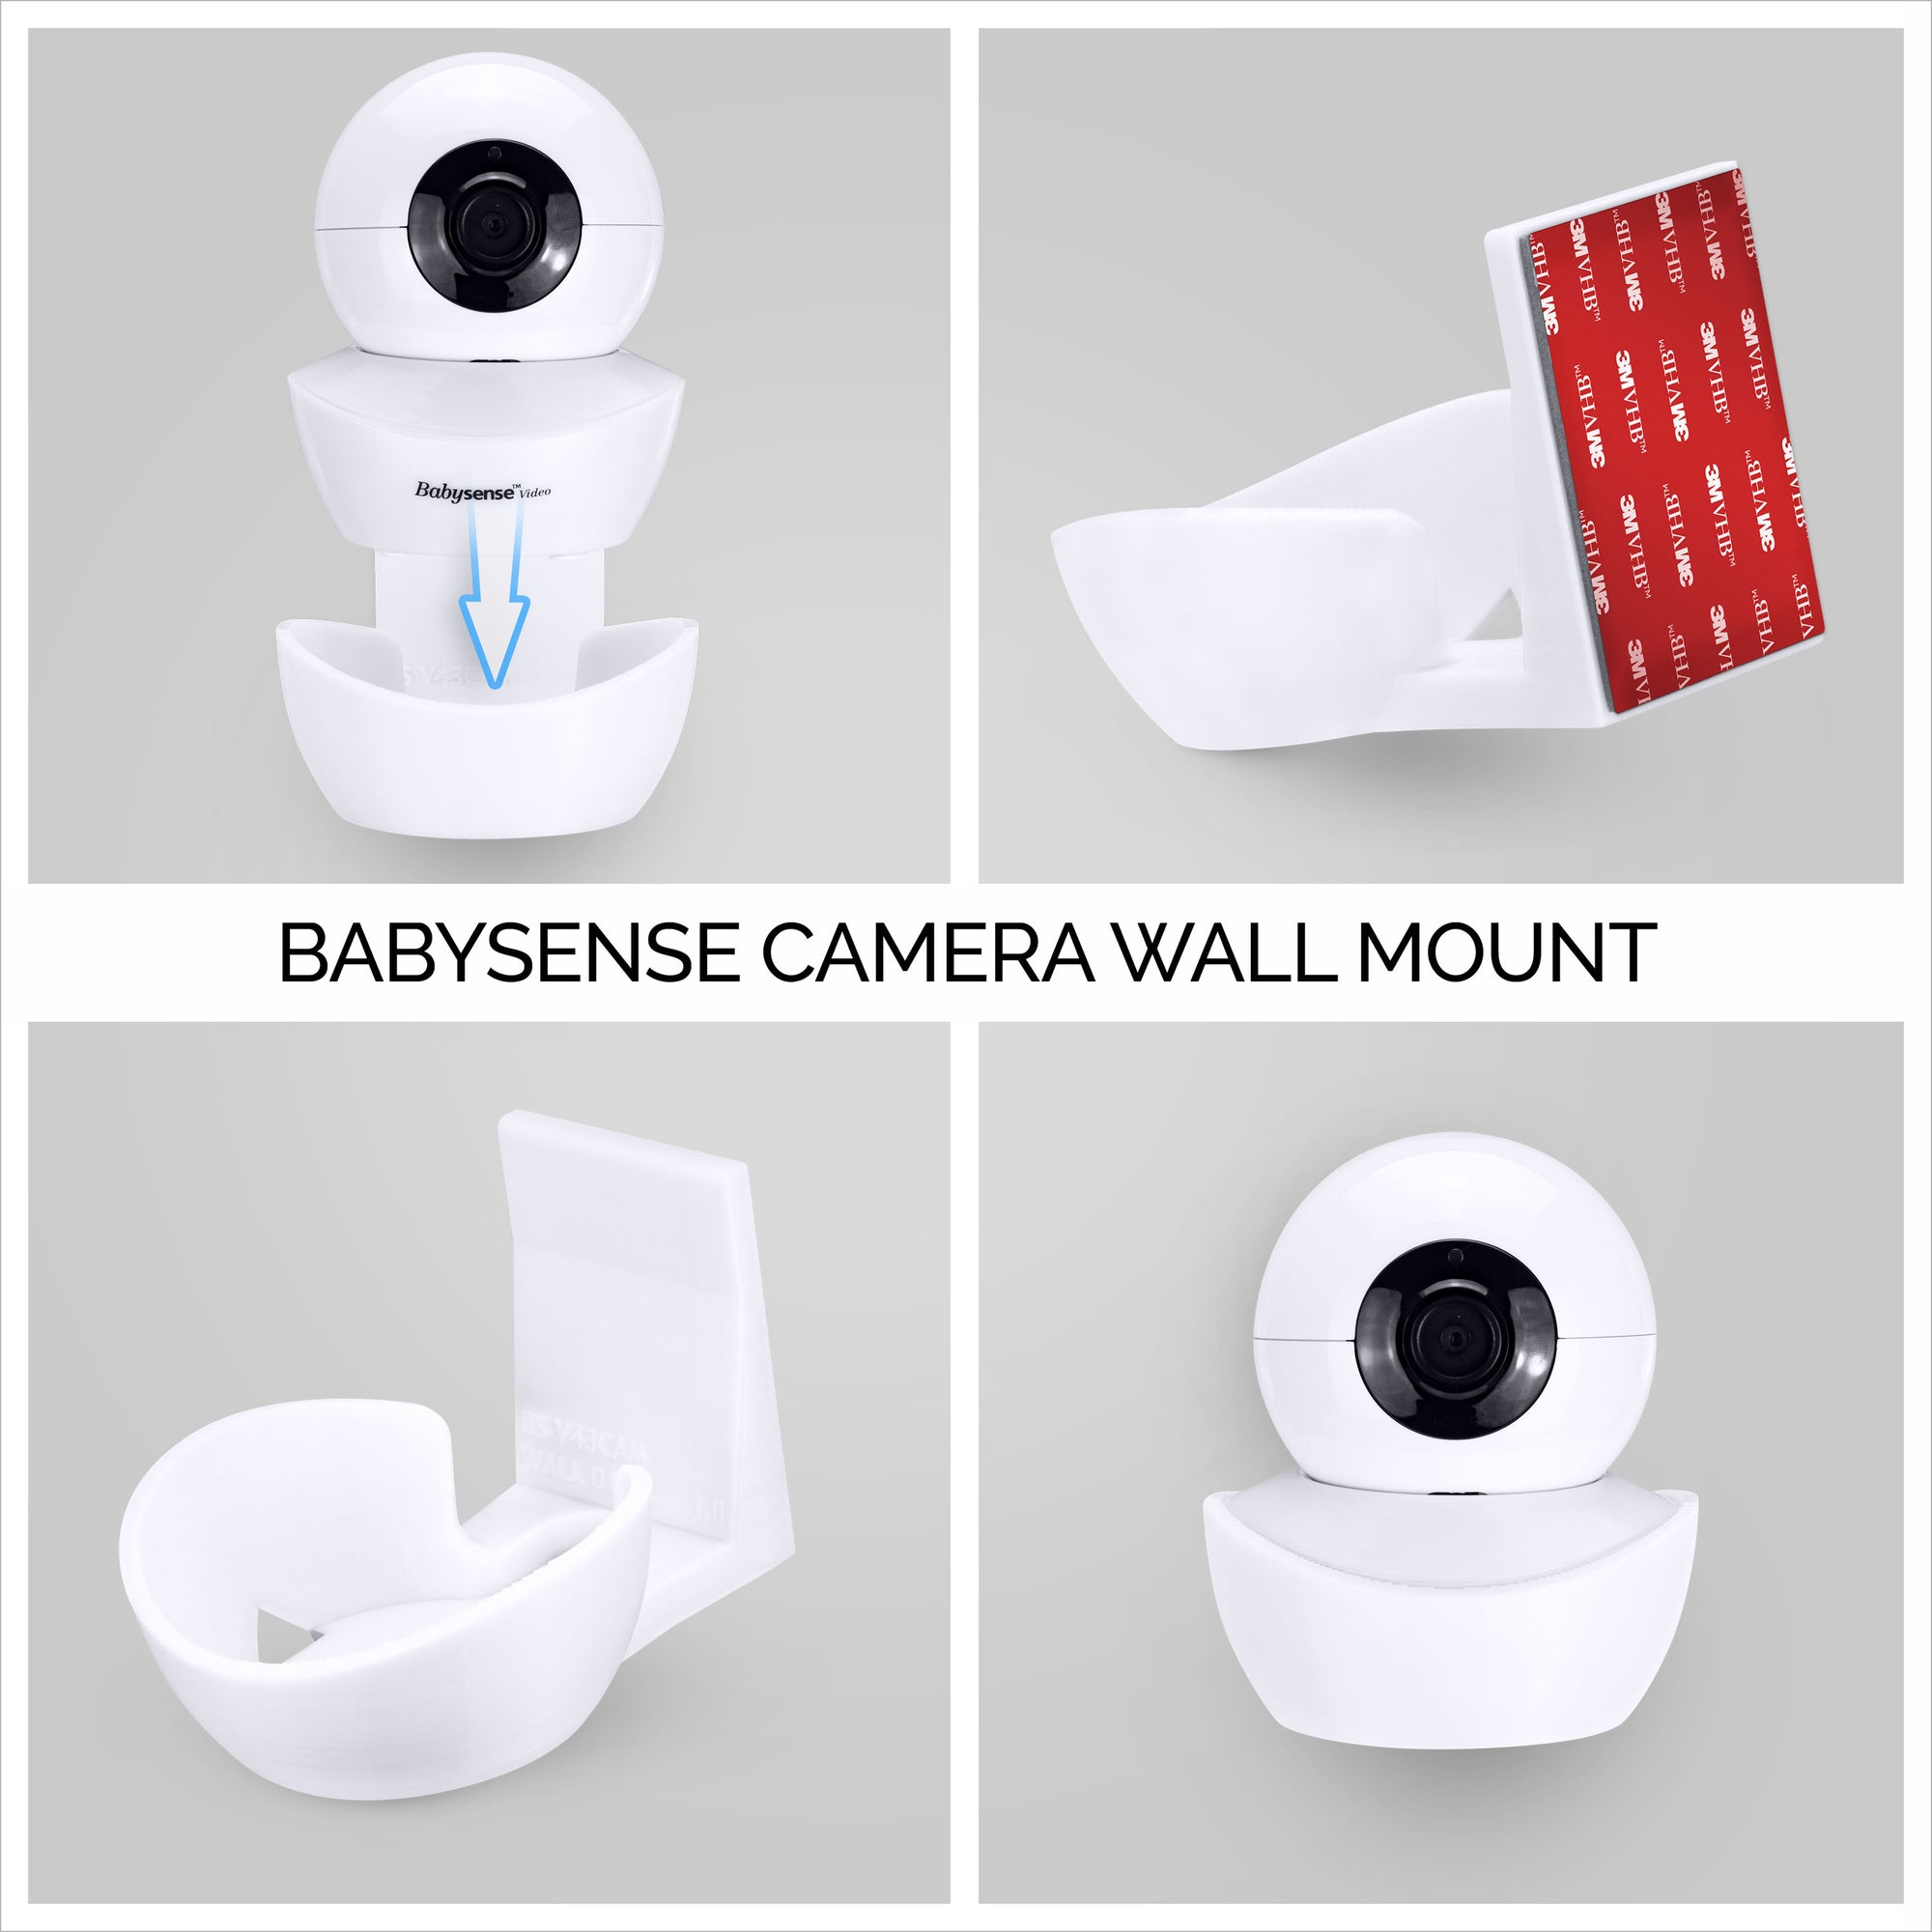 Wall Mount for BabySense V43 Baby Monitor Camera - Adhesive Holder